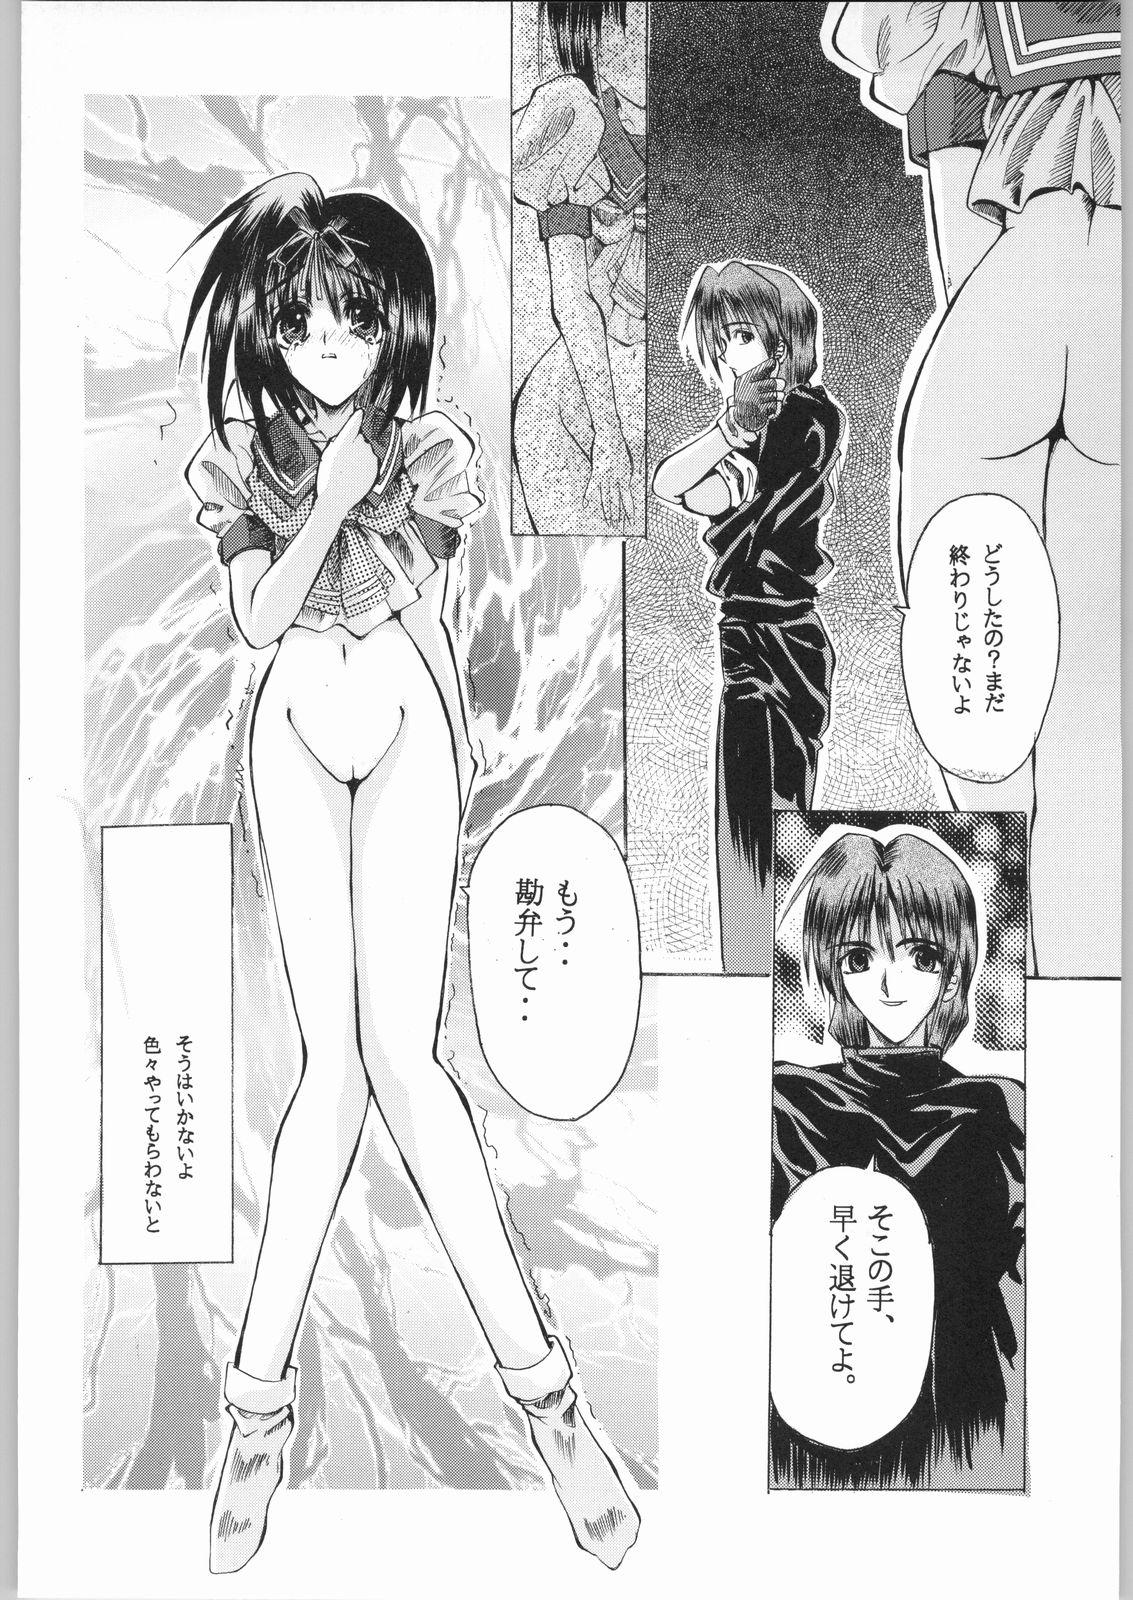 Glamcore Kuro Gokujou Choukichi - Asuka 120 Trannies - Page 9